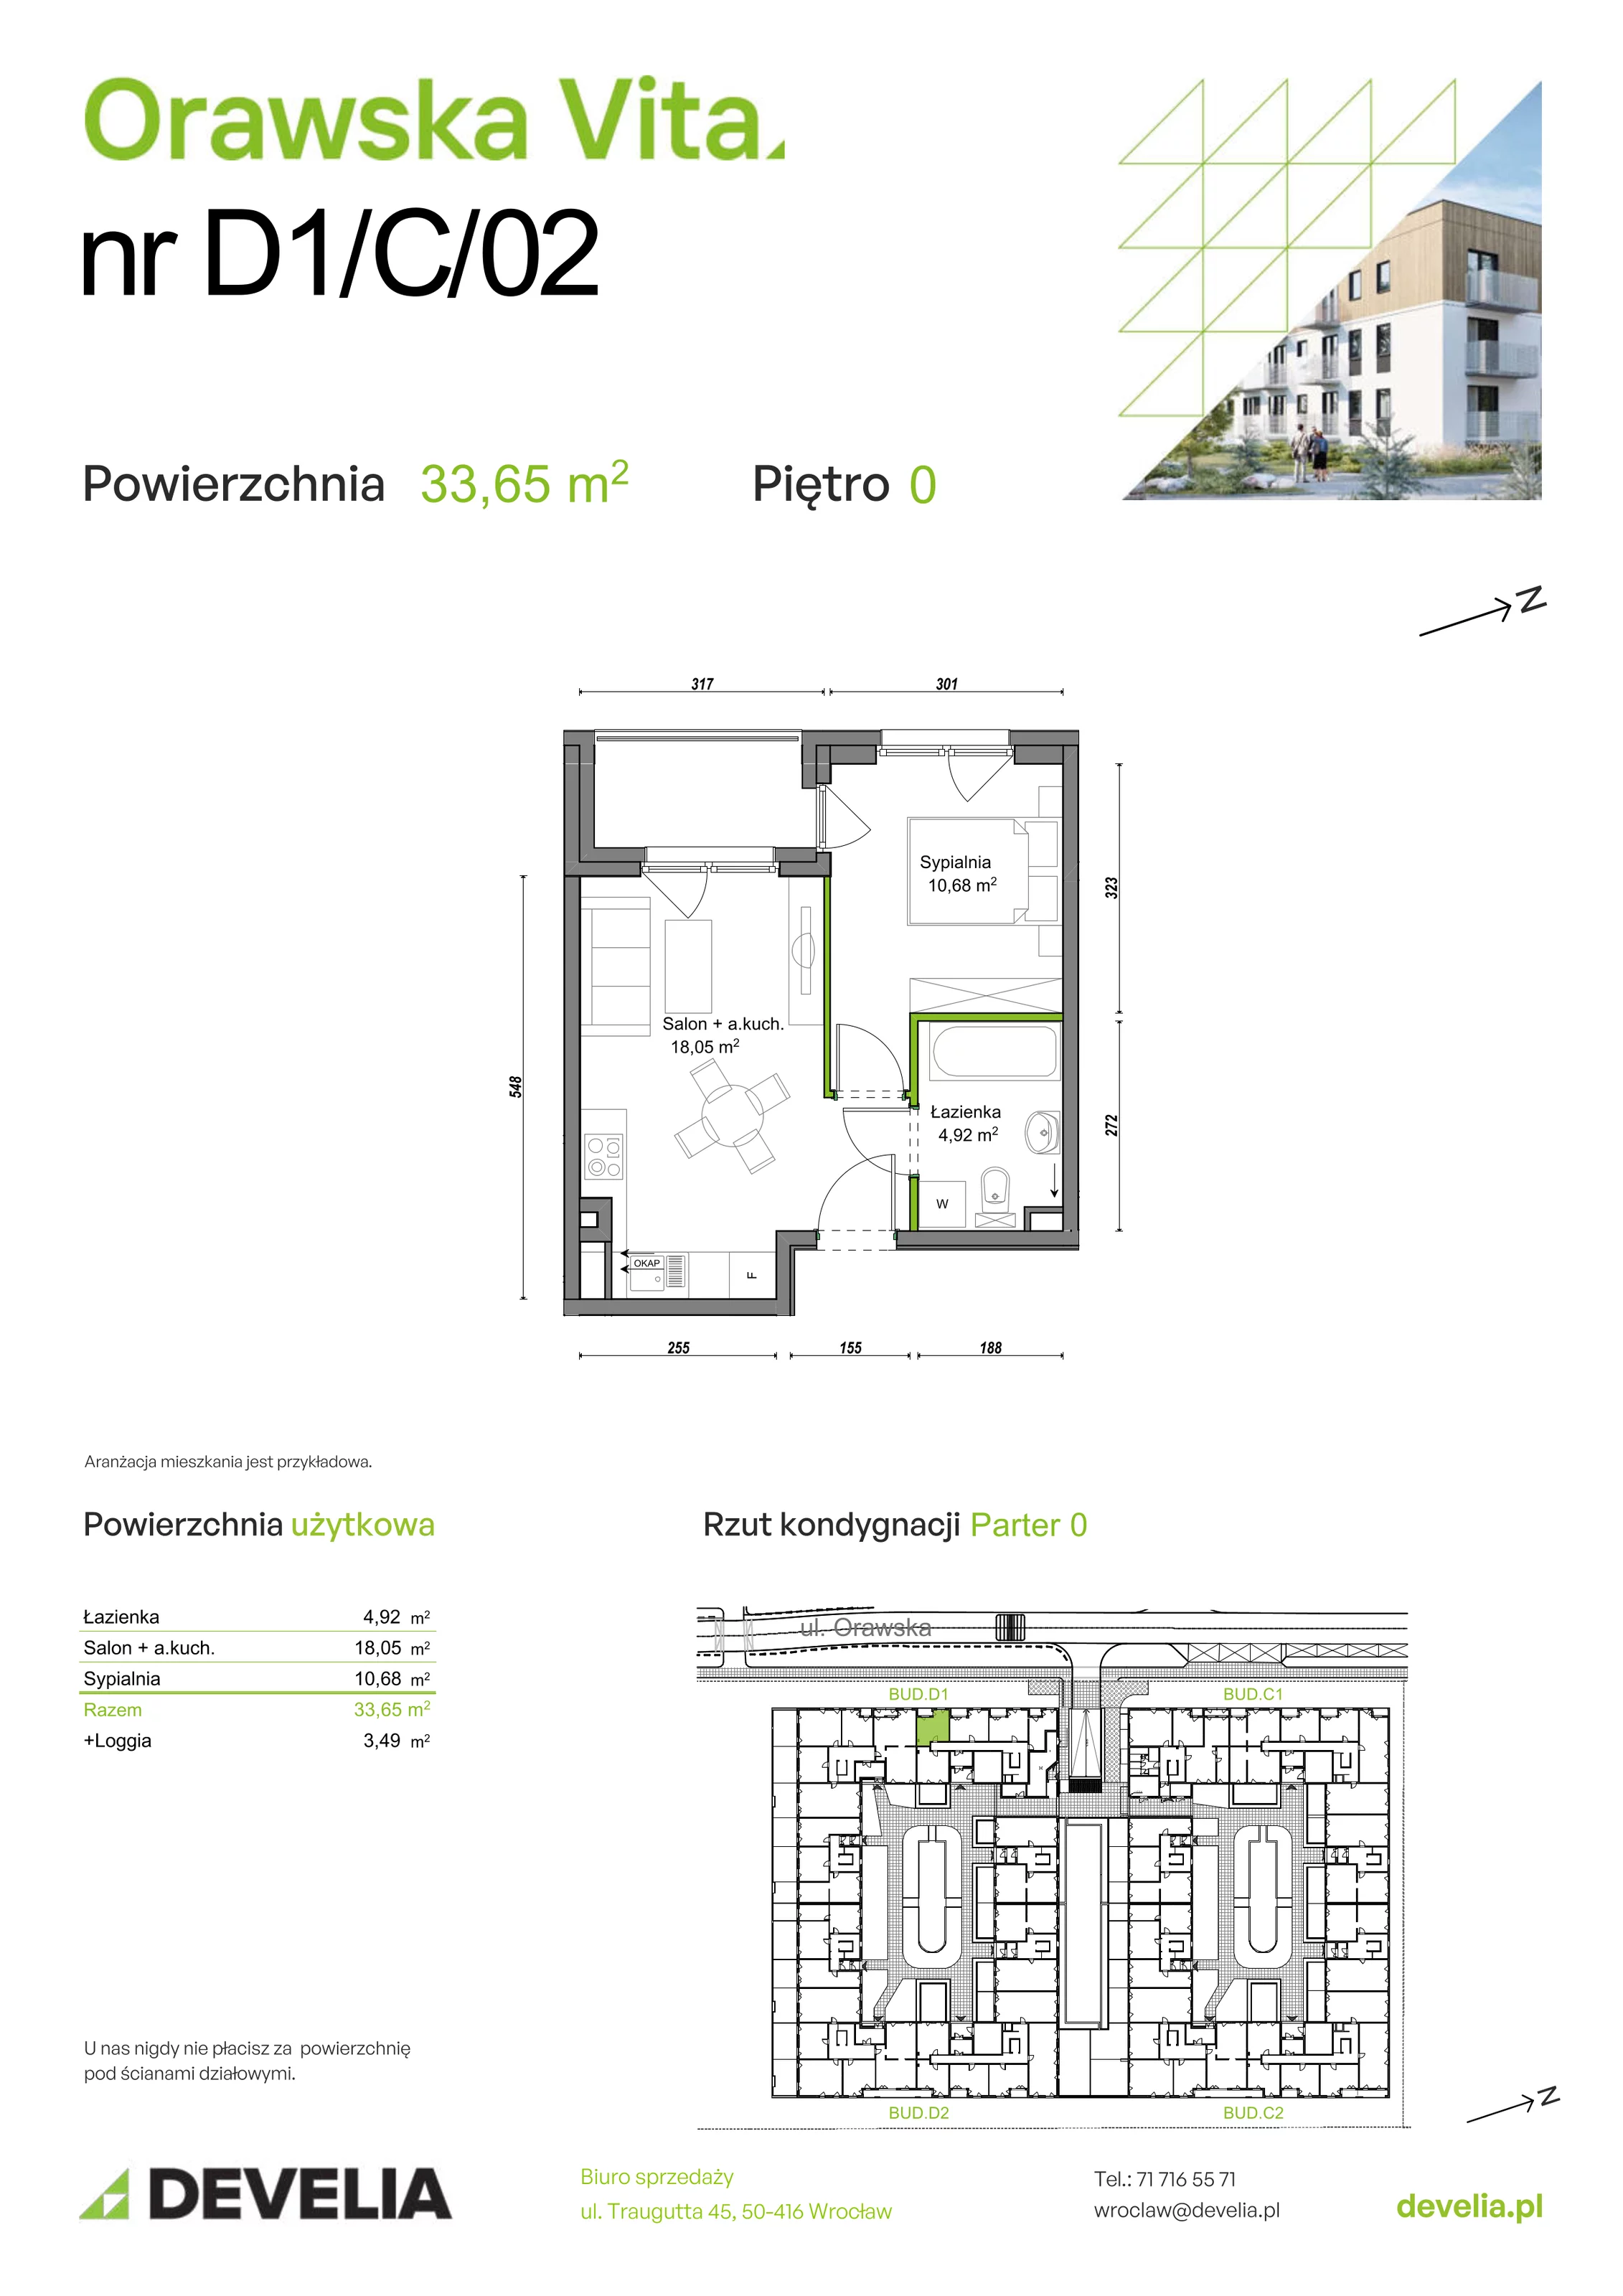 Mieszkanie 33,65 m², parter, oferta nr D1/C/02, Orawska Vita, Wrocław, Ołtaszyn, Krzyki, ul. Orawska 73